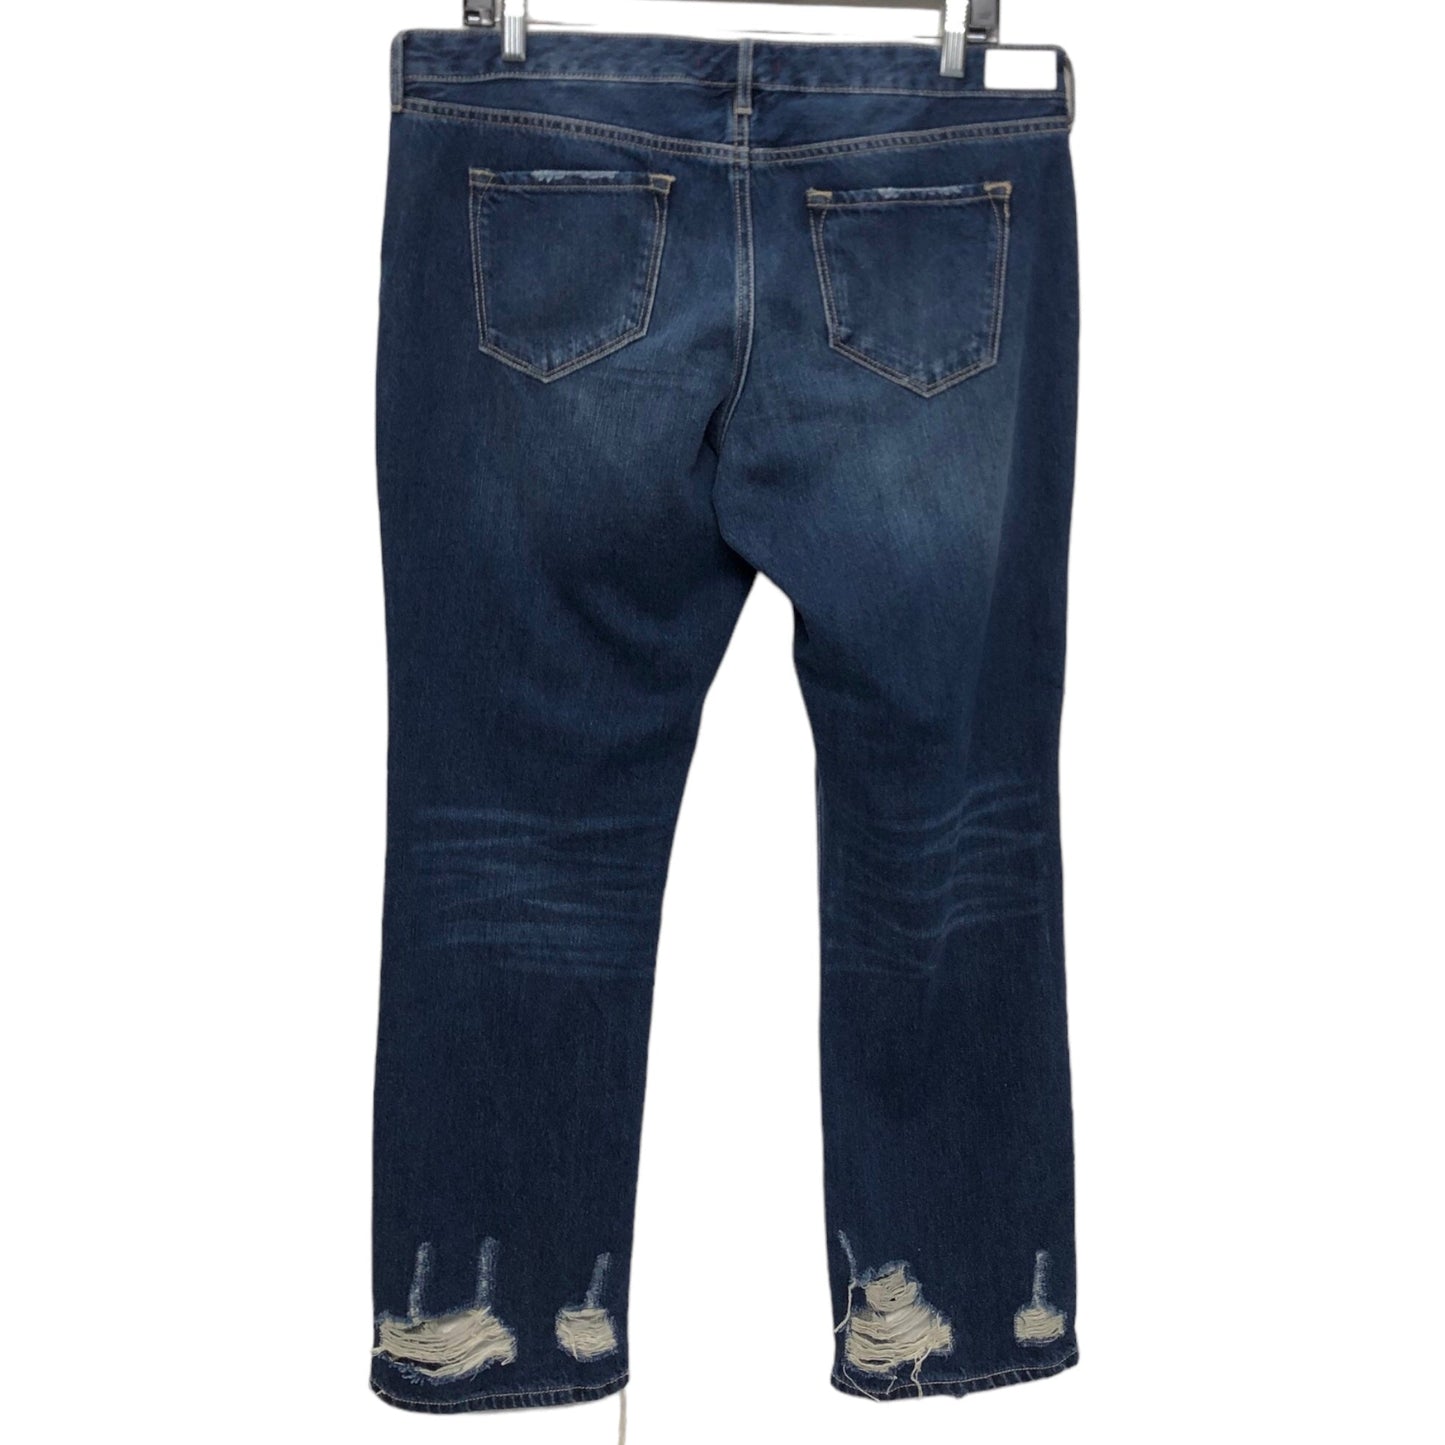 Jeans Straight By Dear John  Size: 8